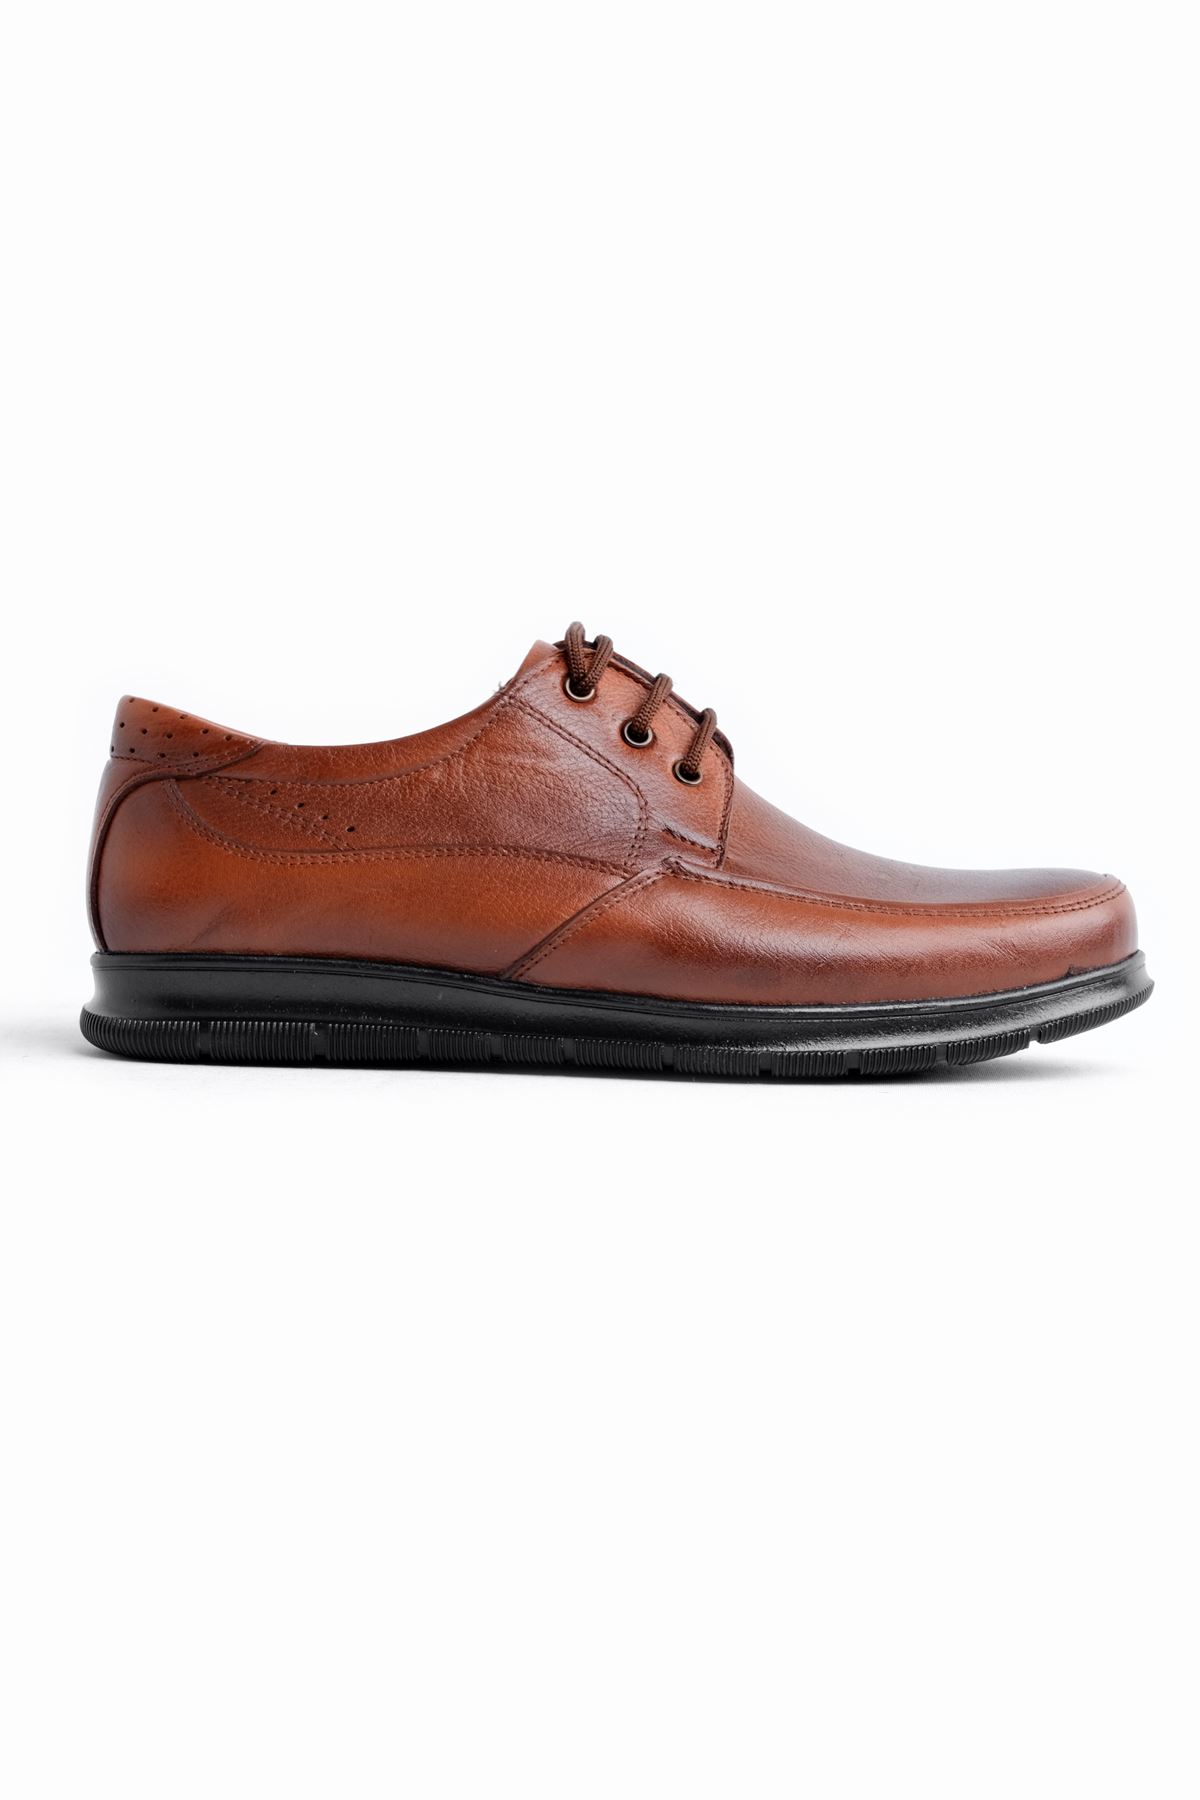 Tegan Erkek Hakiki Deri Klasik Ayakkabı-Kahverengi